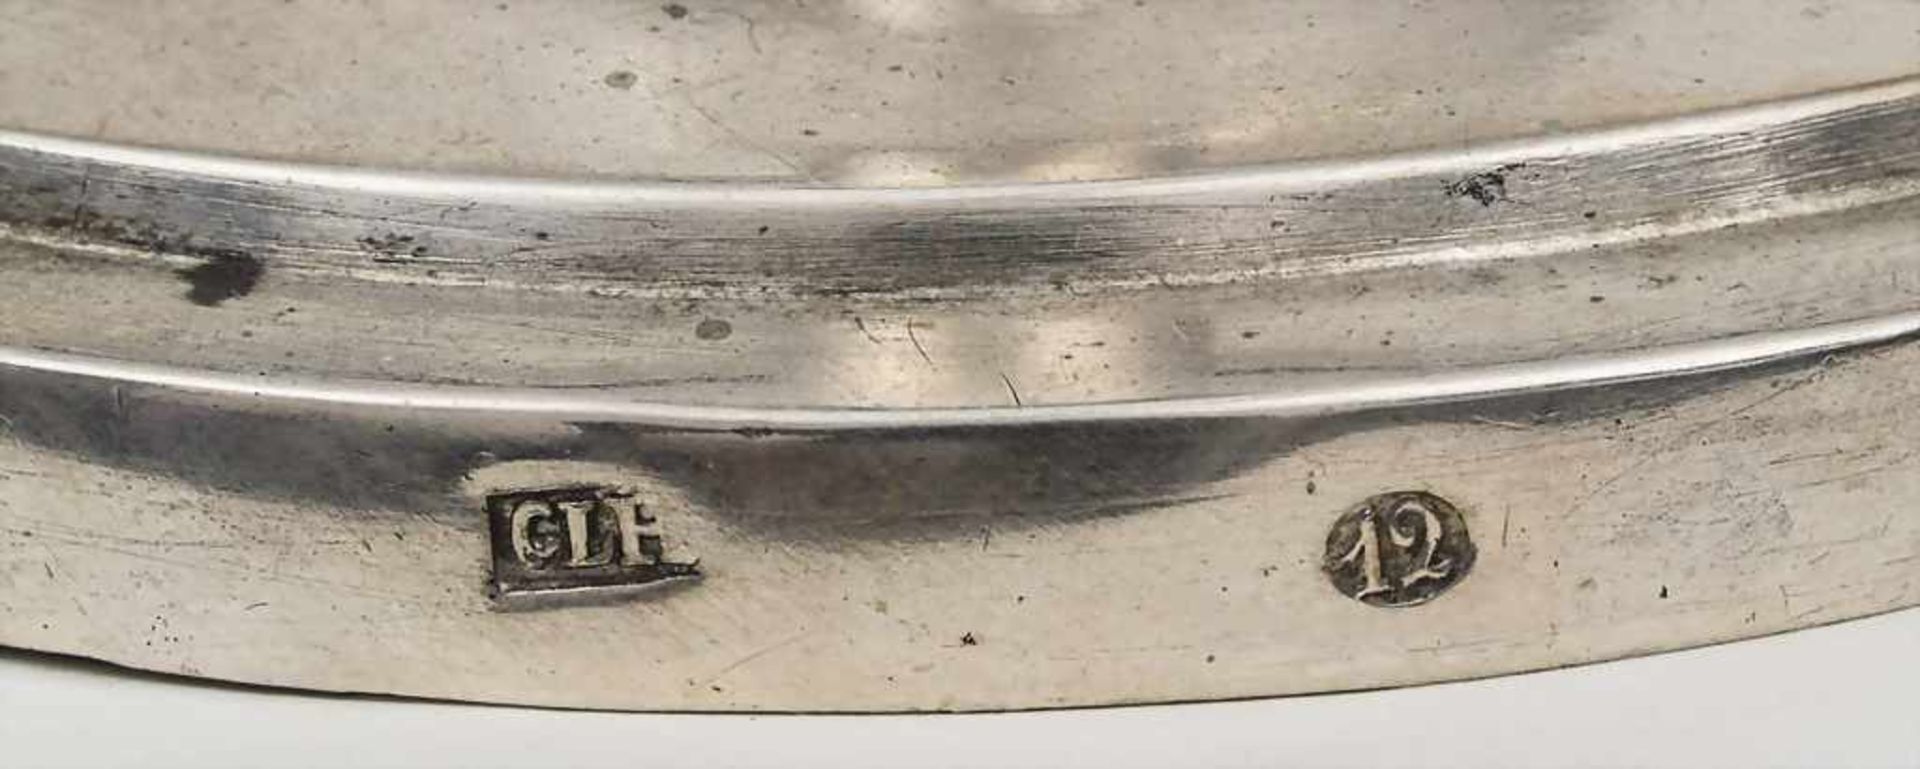 Empire Leuchter / Candle Stick, um 1820 Material: Silber 12 Lot,Punzierung: 12, Meisterpunze CLH, - Bild 2 aus 2